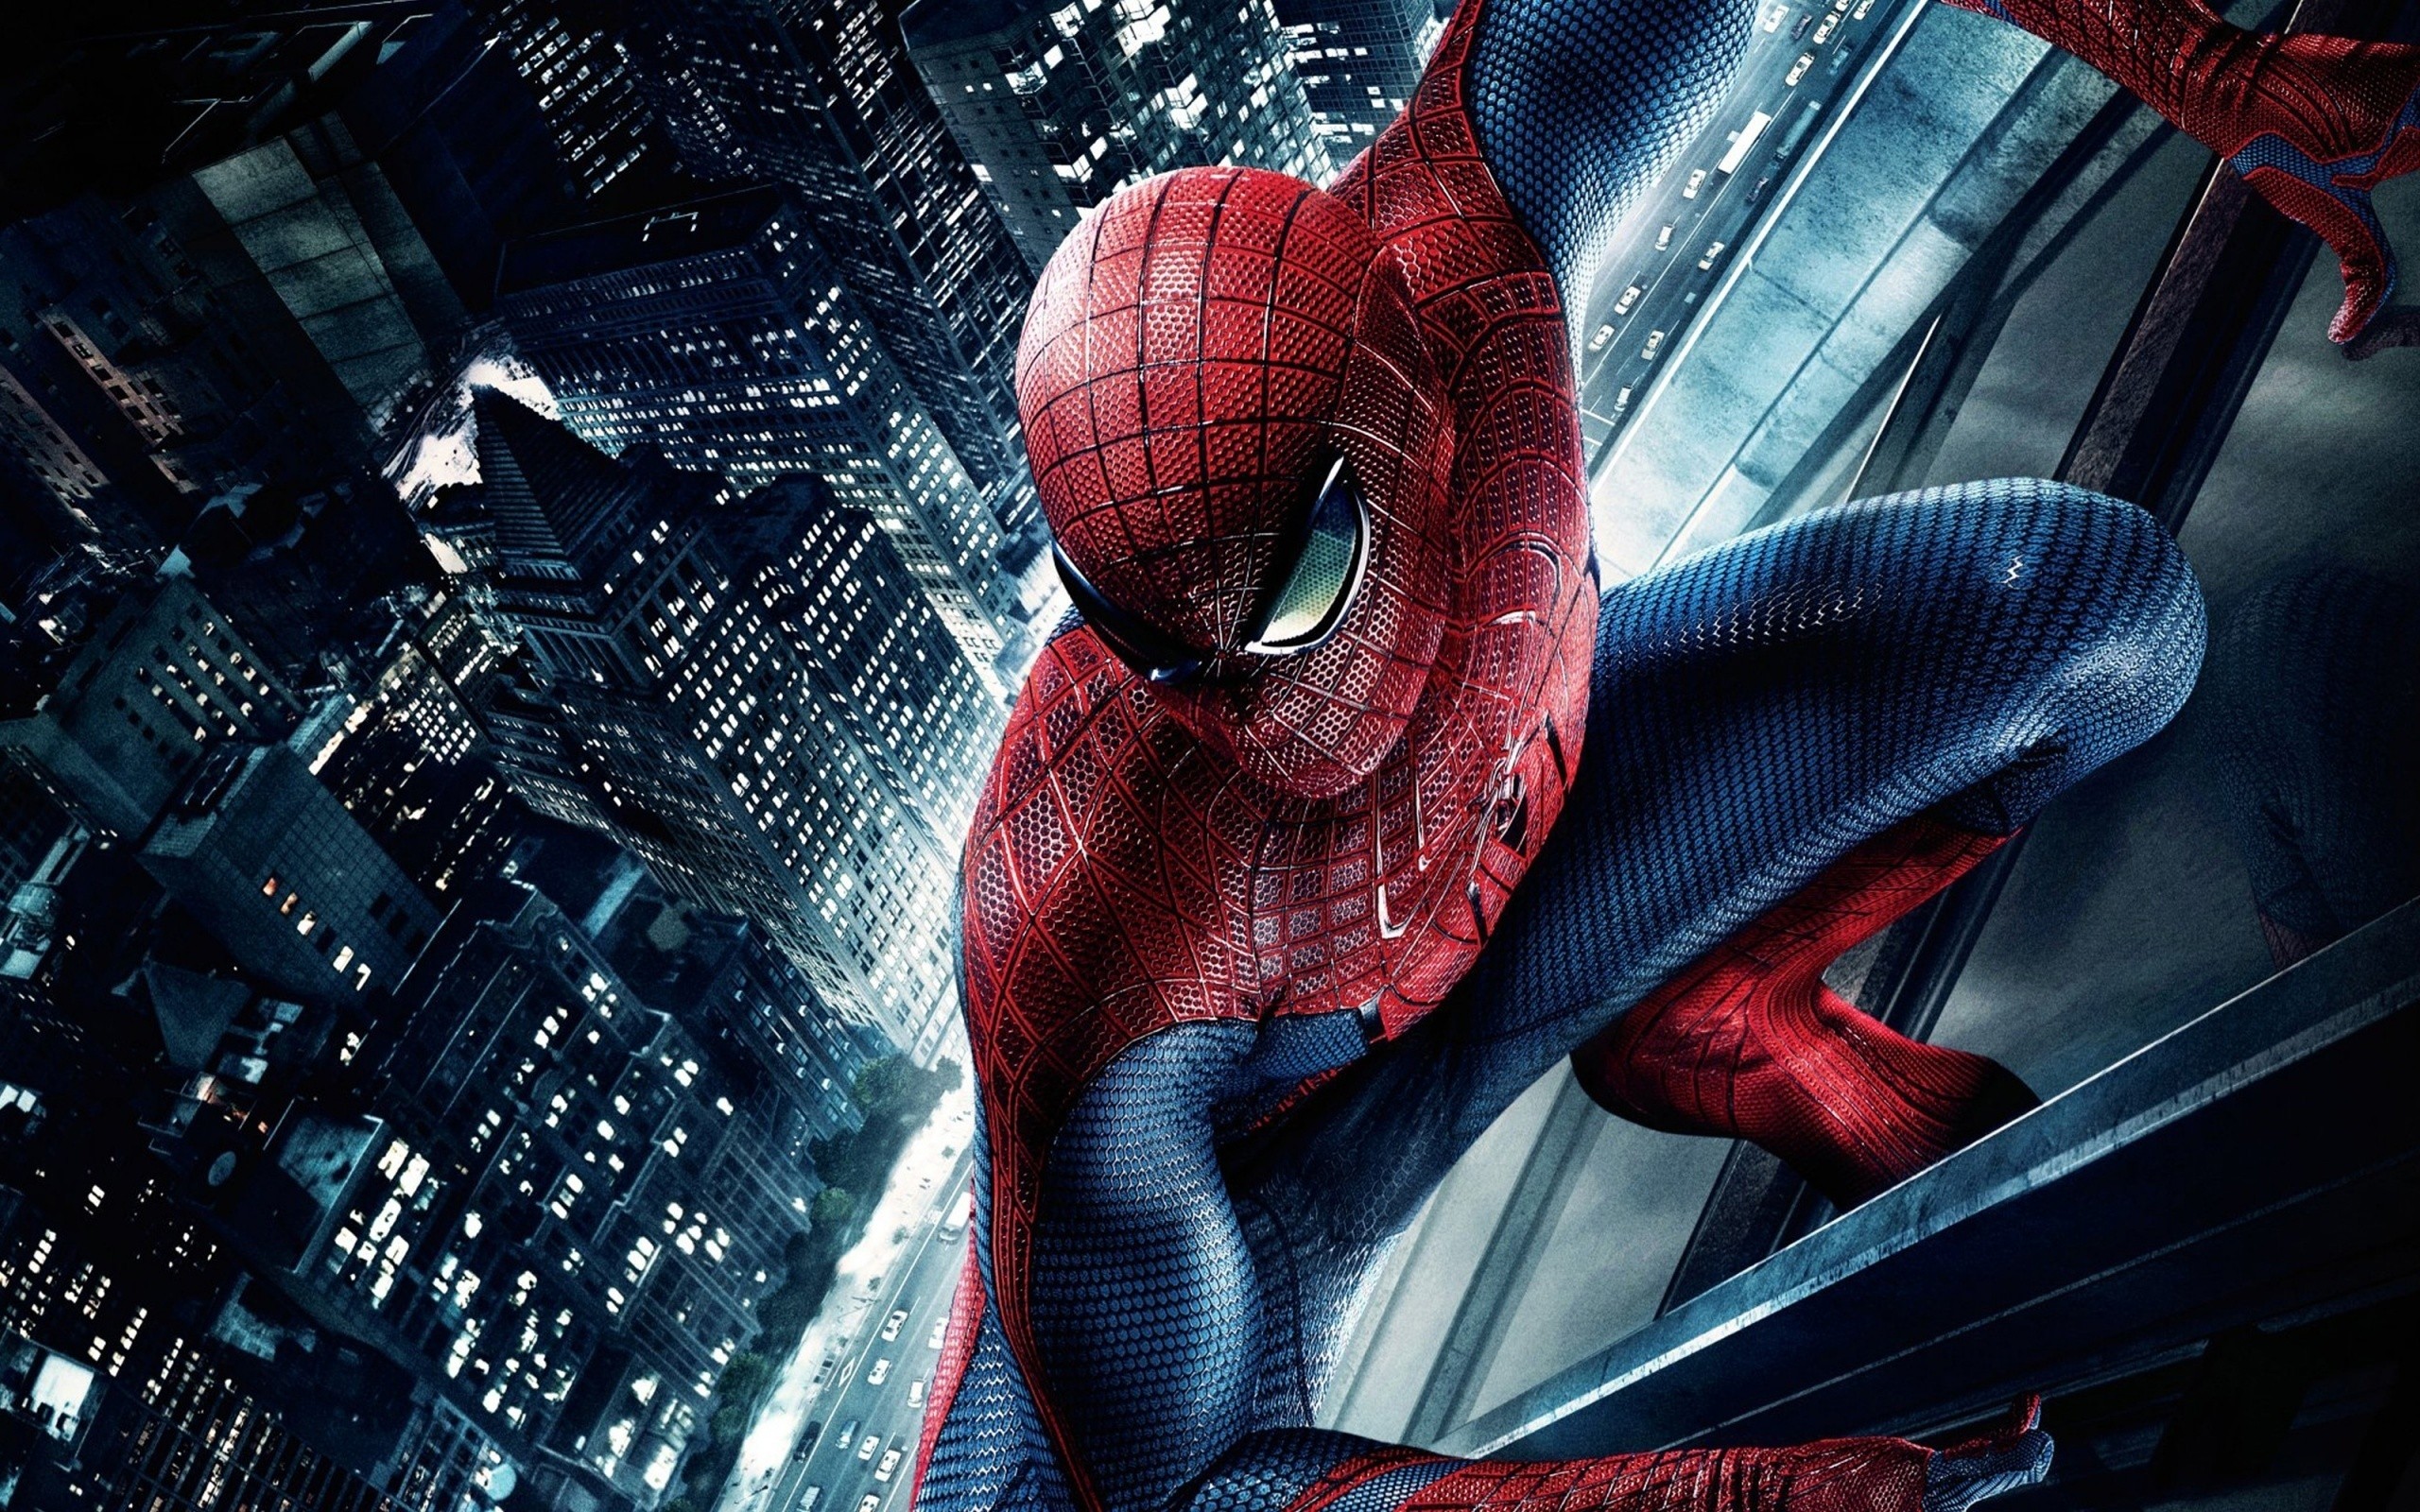 Spider Man, Digital art, The Amazing Spider Man, Movies Wallpaper